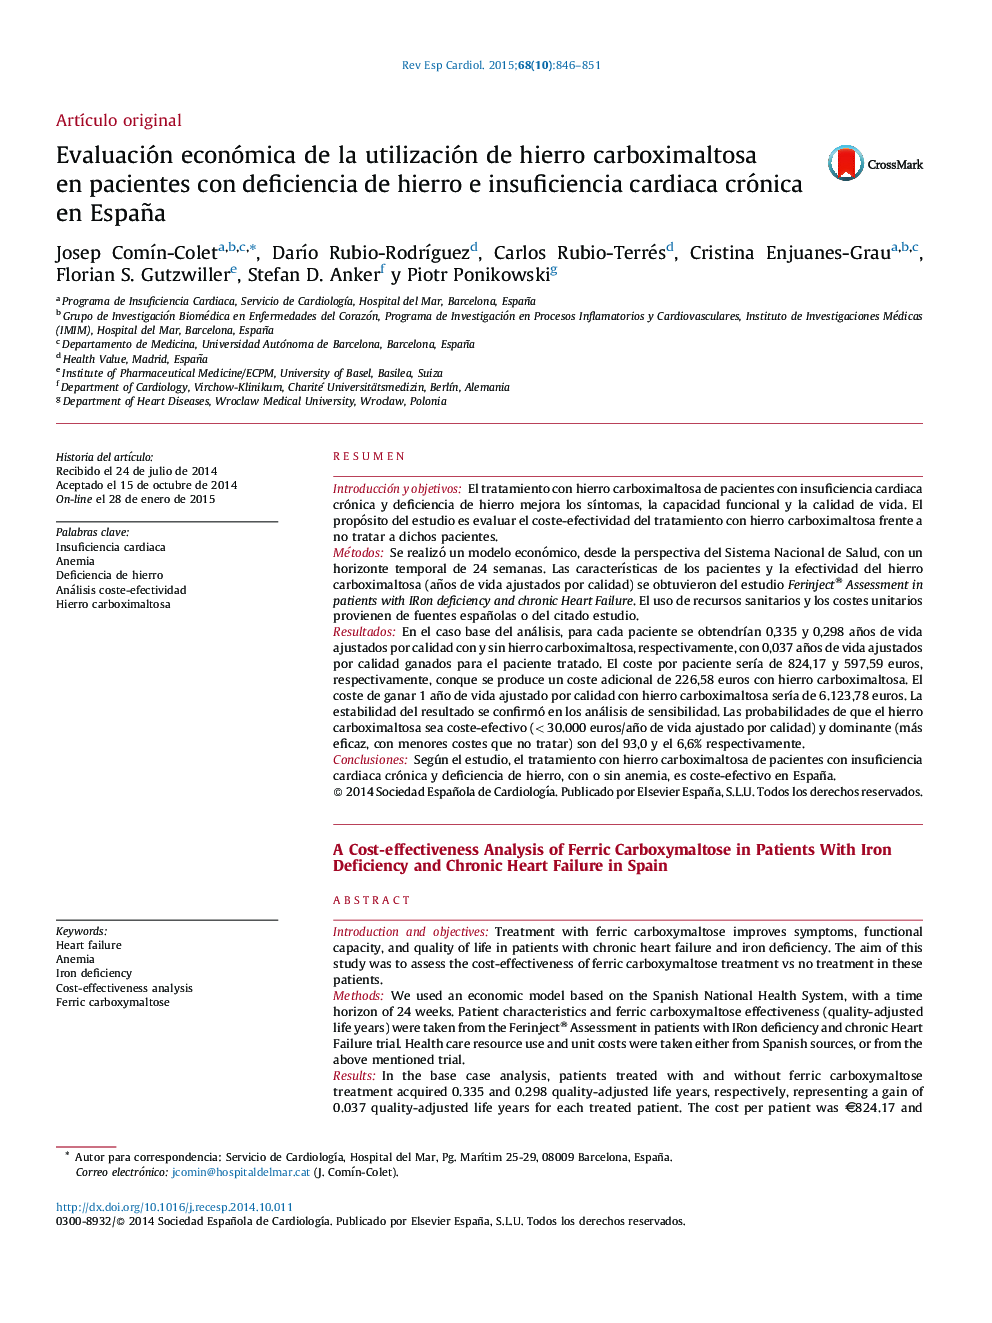 Evaluación económica de la utilización de hierro carboximaltosa en pacientes con deficiencia de hierro e insuficiencia cardiaca crónica en España